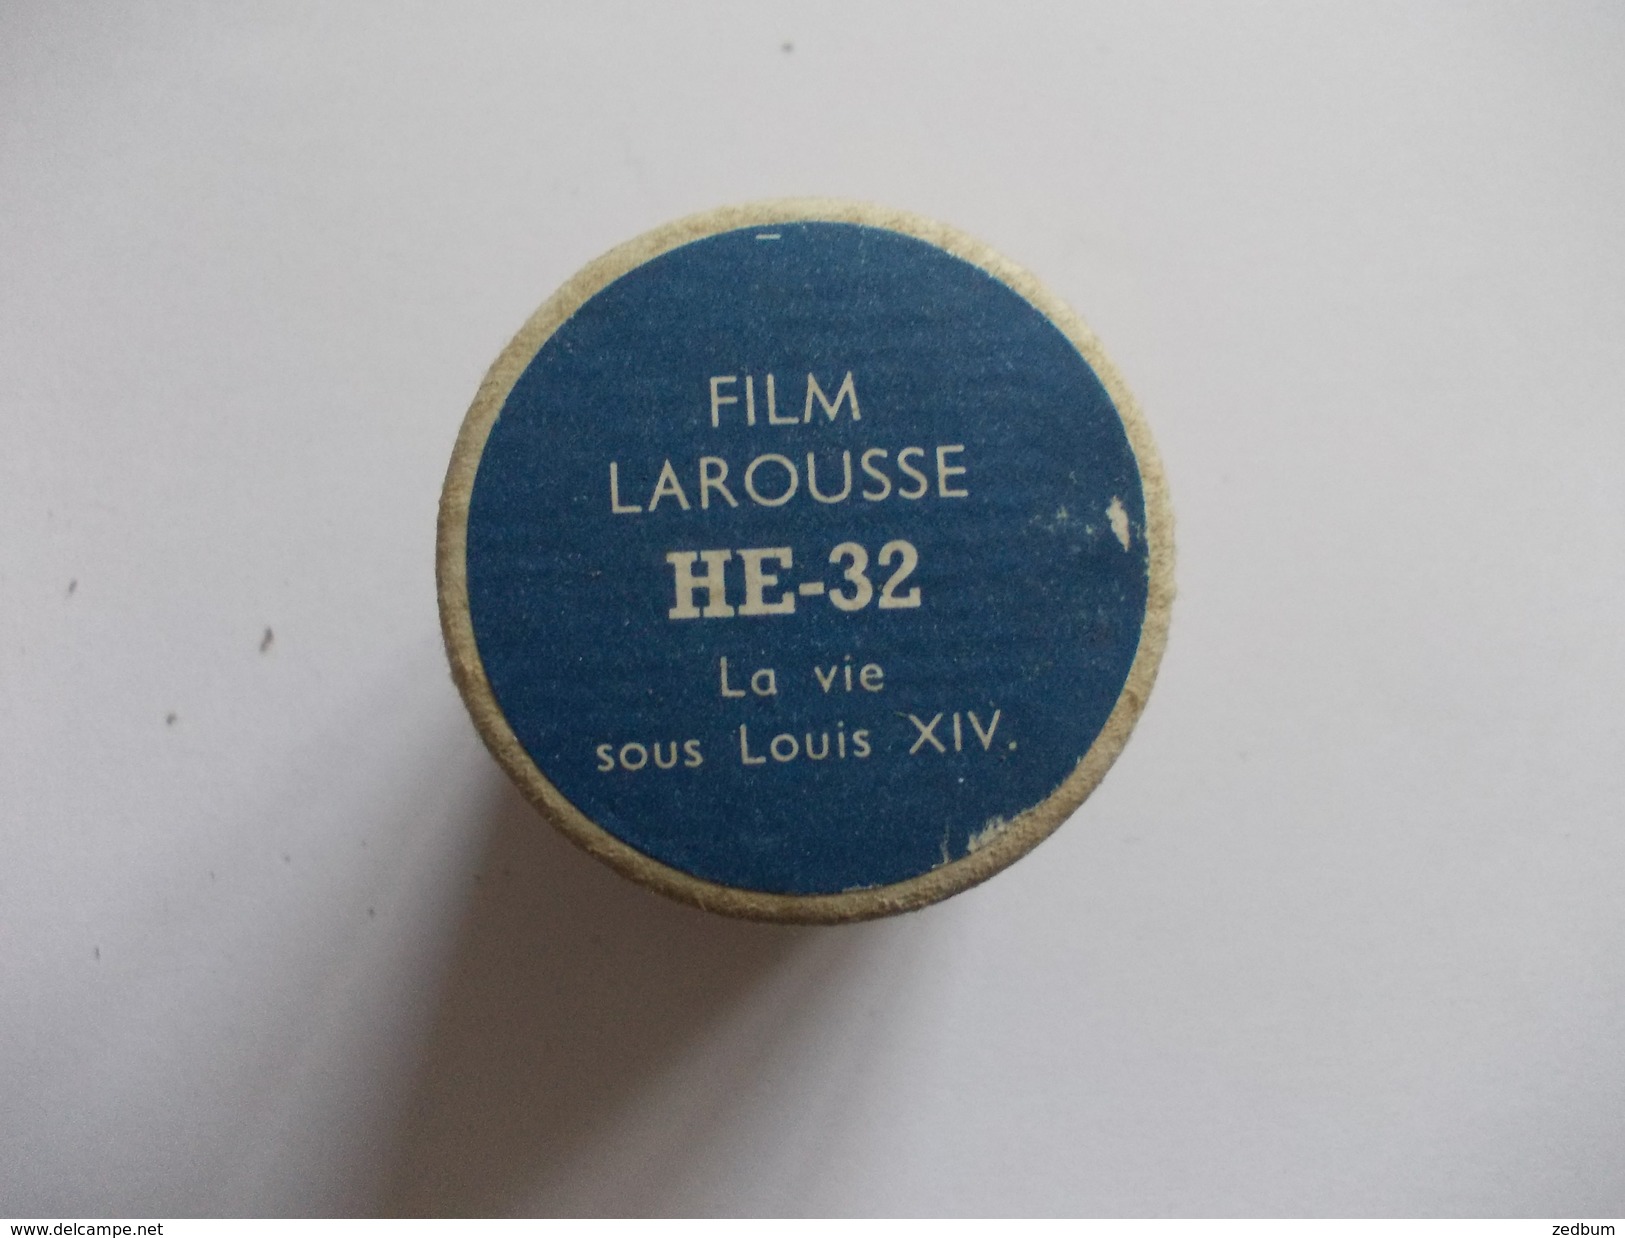 FILM FIXE Larousse HE-32 La Vie Sous Louis XIV - 35mm -16mm - 9,5+8+S8mm Film Rolls